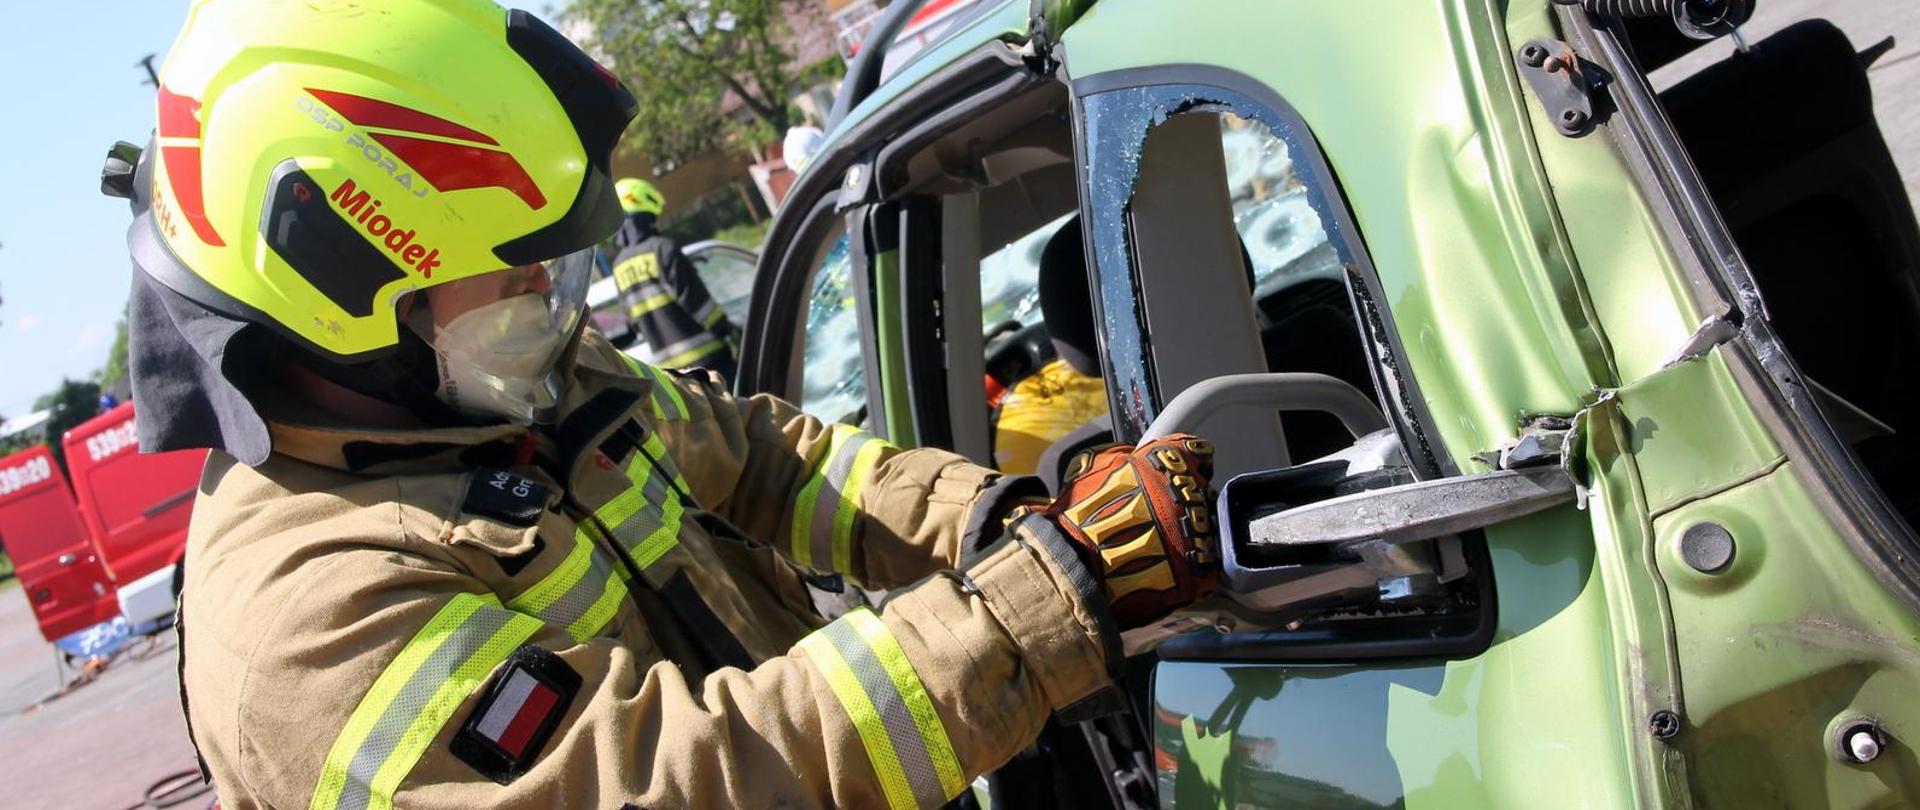 Strażak w żółtym hełmie z napisem "Miodek" i w specjalnym uniformie używa narzędzia hydraulicznego do cięcia zielonego samochodu. W tle można dostrzec inny wóz strażacki oraz kilku strażaków.